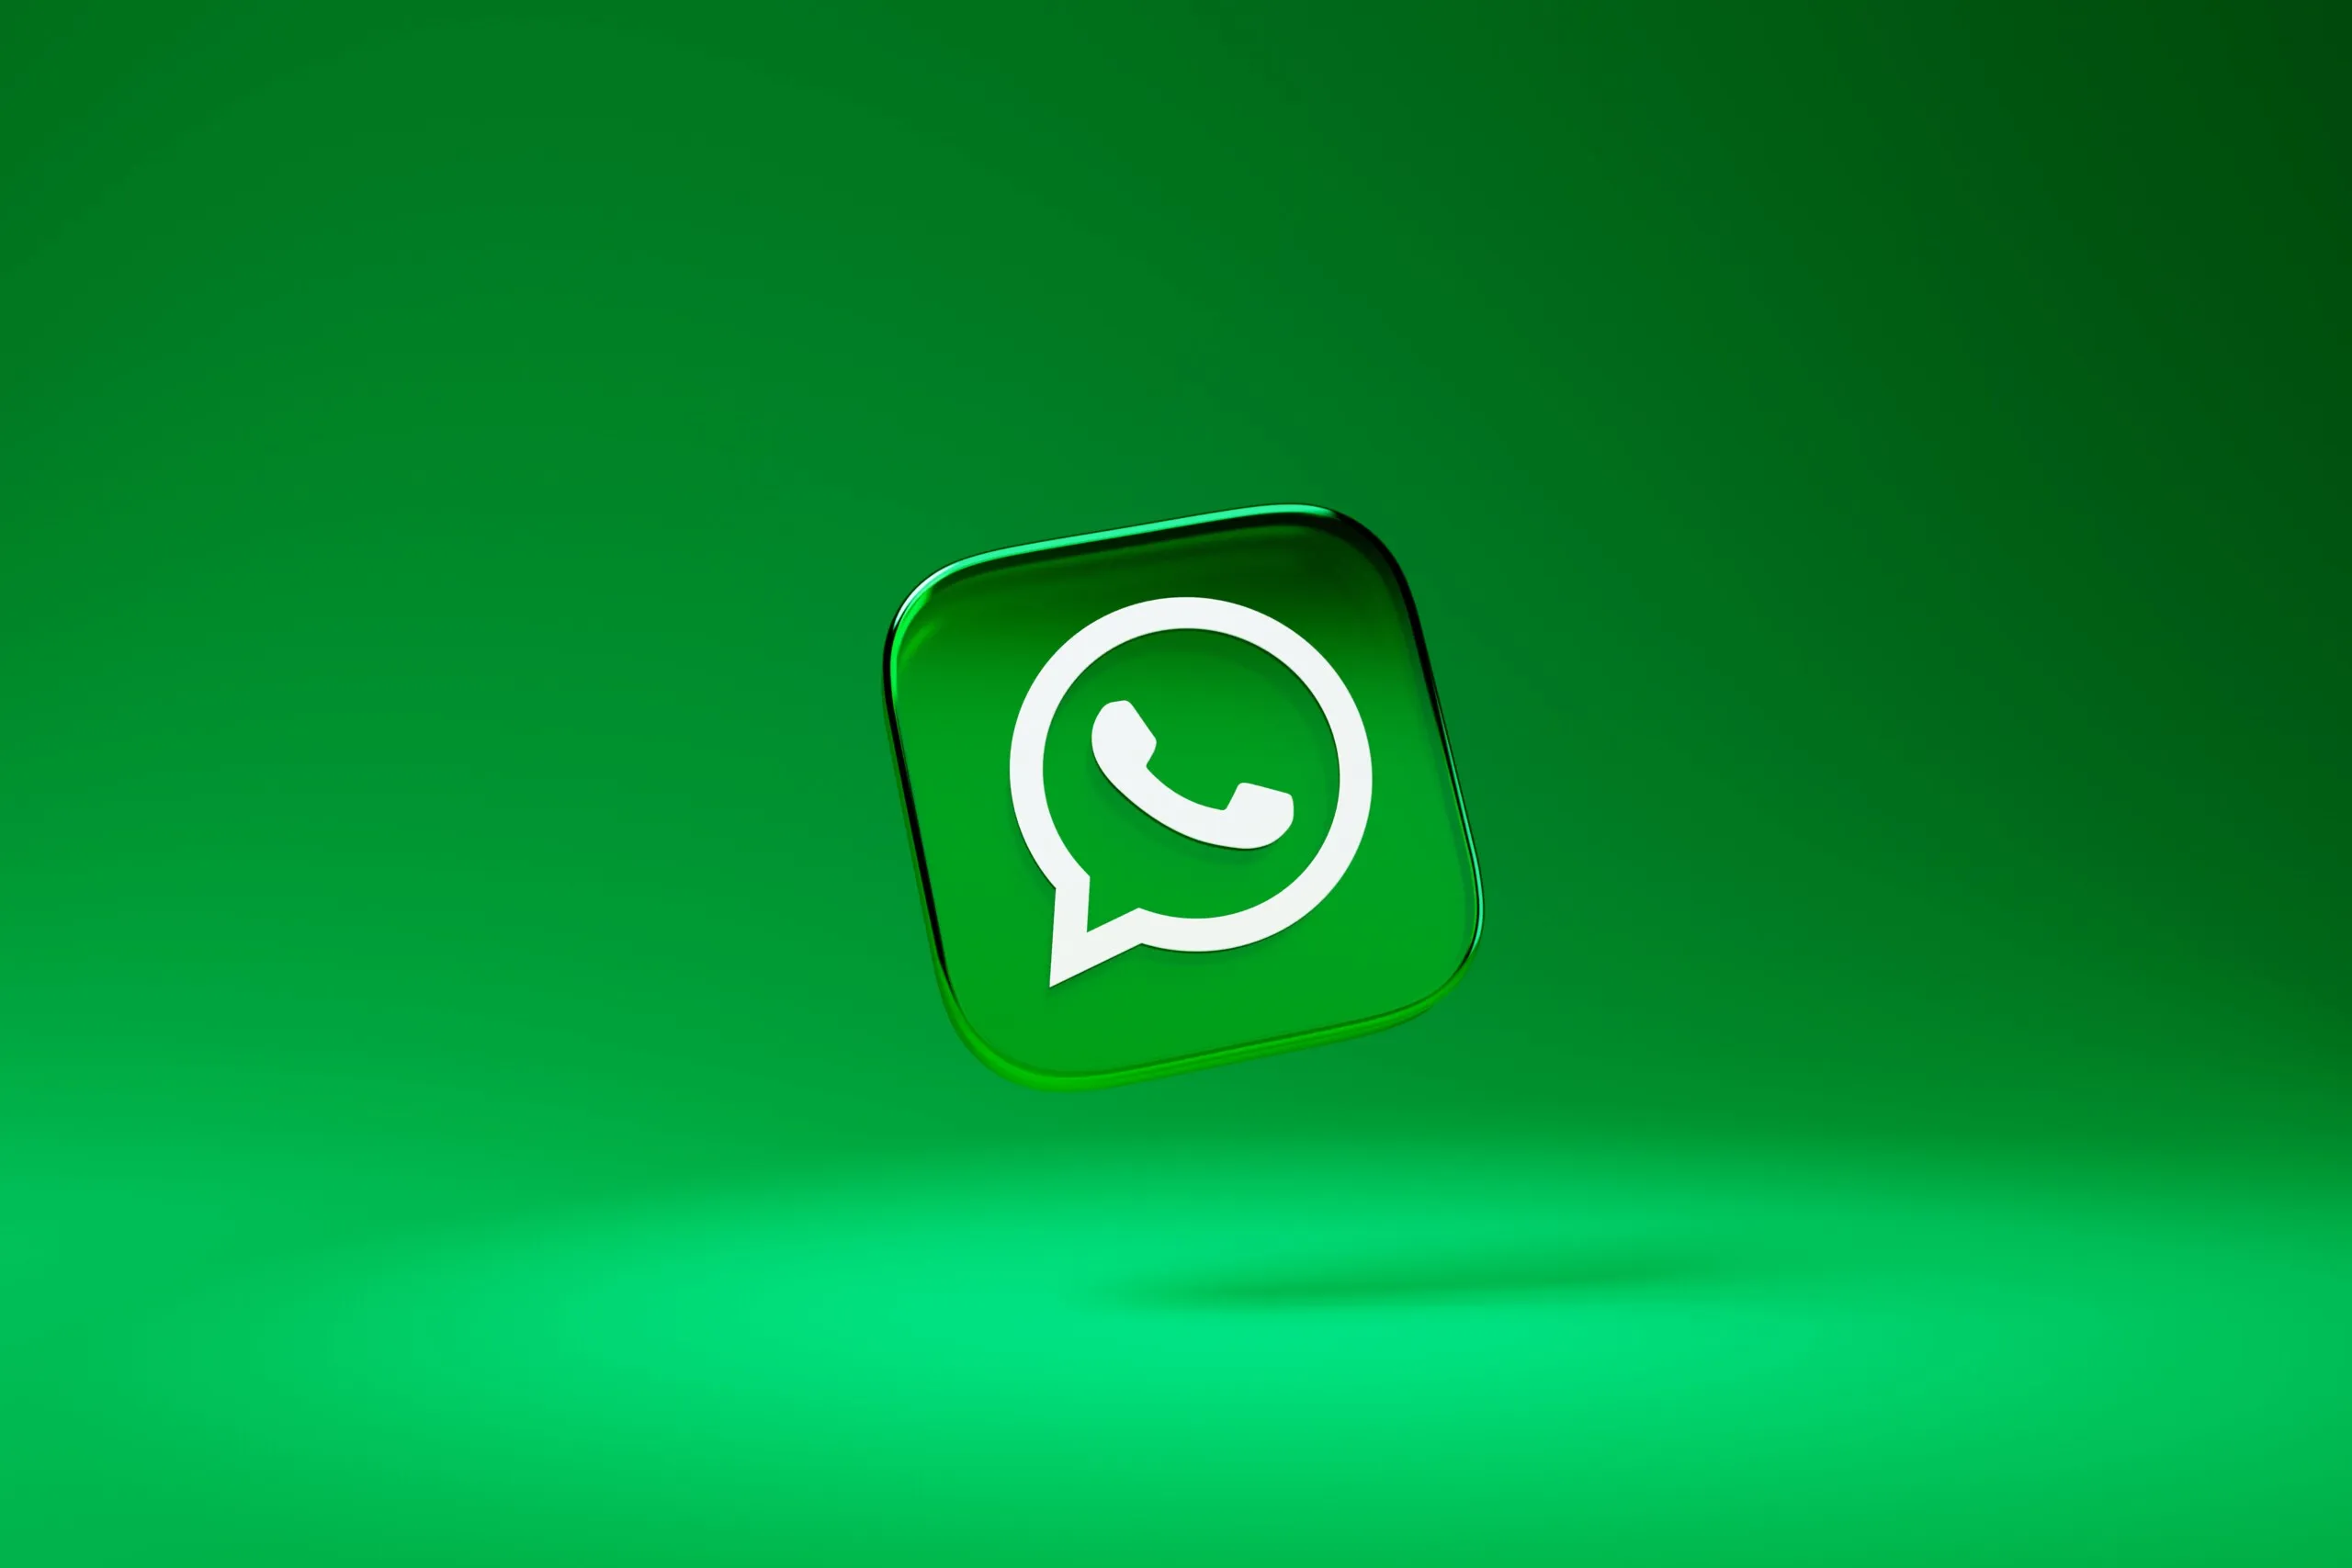 Концепт предполагает возможность закрепить наверху до 5 чатов WhatsApp